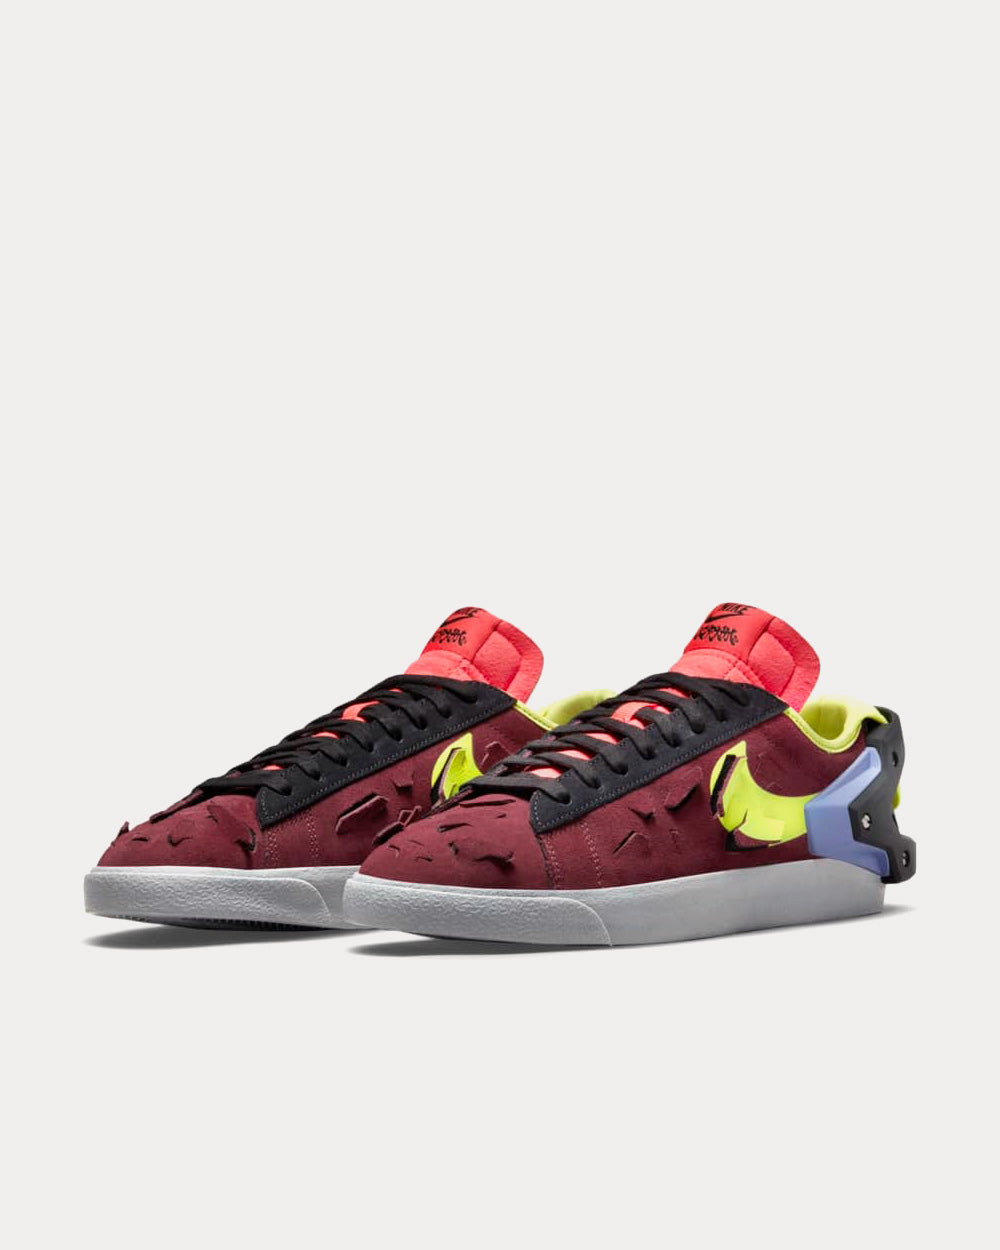 Nike x ACRONYM ® - Blazer Low Night Maroon Low Top Sneakers